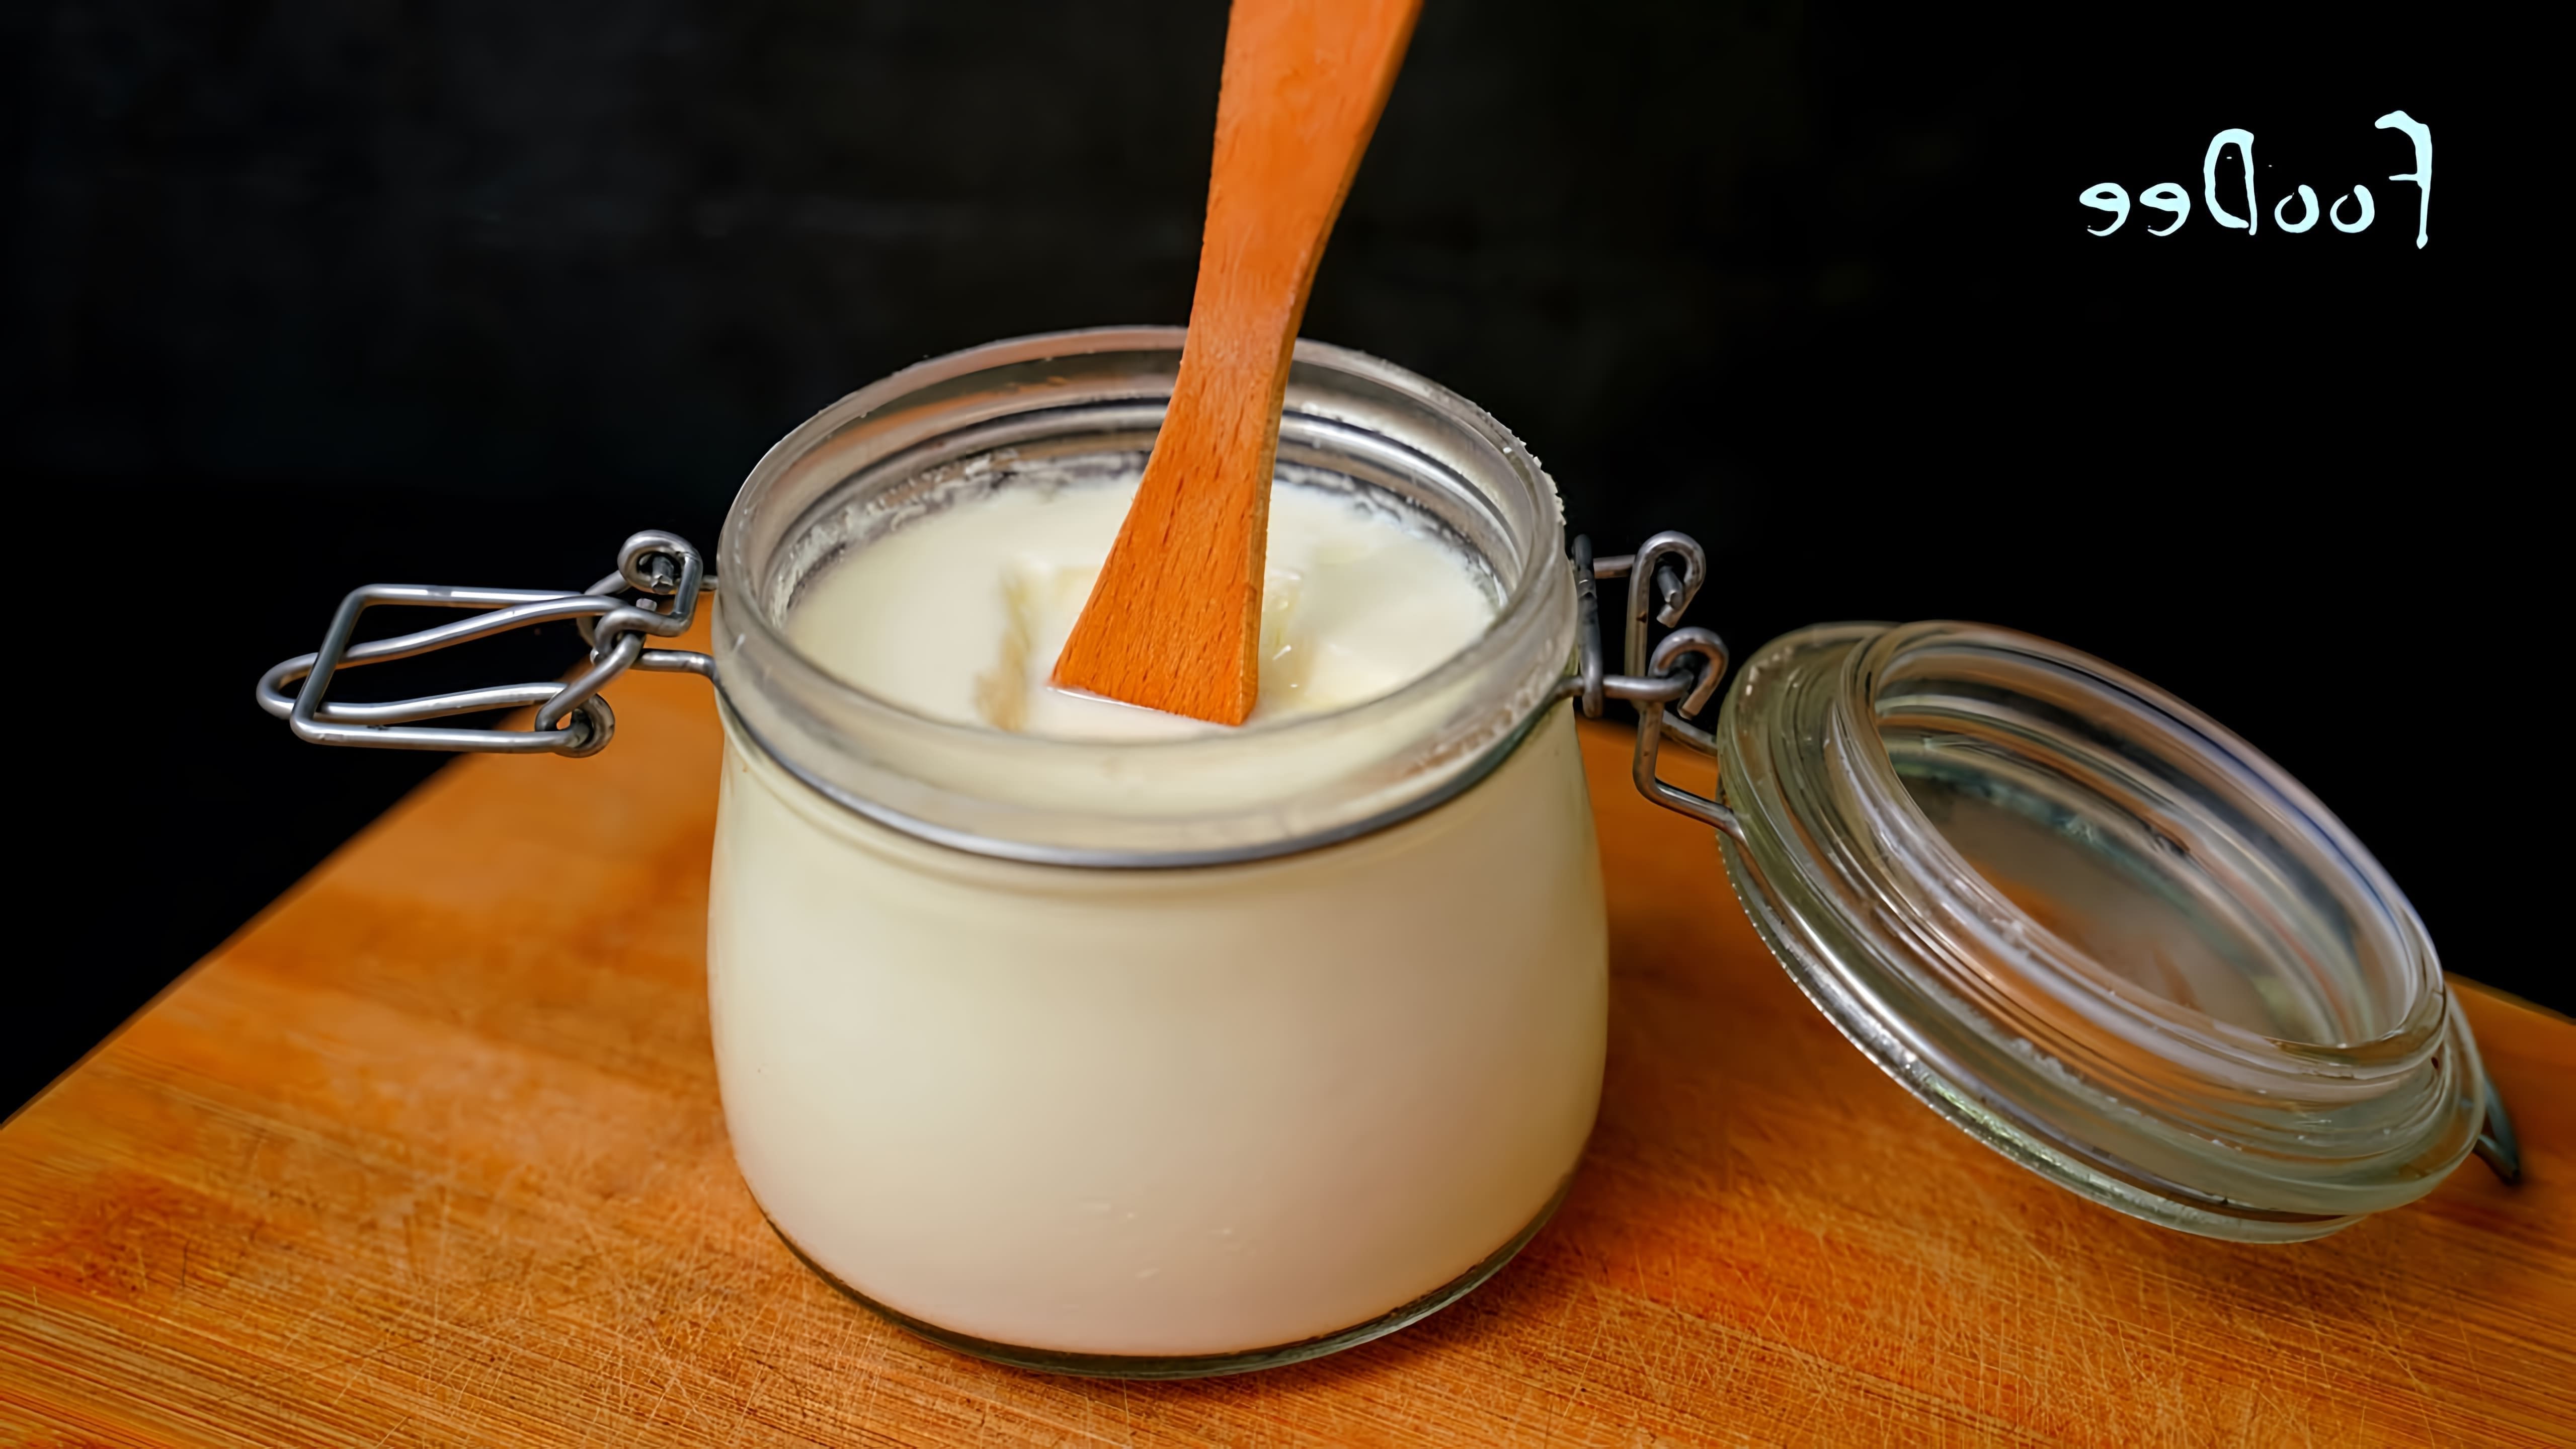 В этом видео демонстрируется простой и быстрый способ приготовления домашнего йогурта без использования закваски